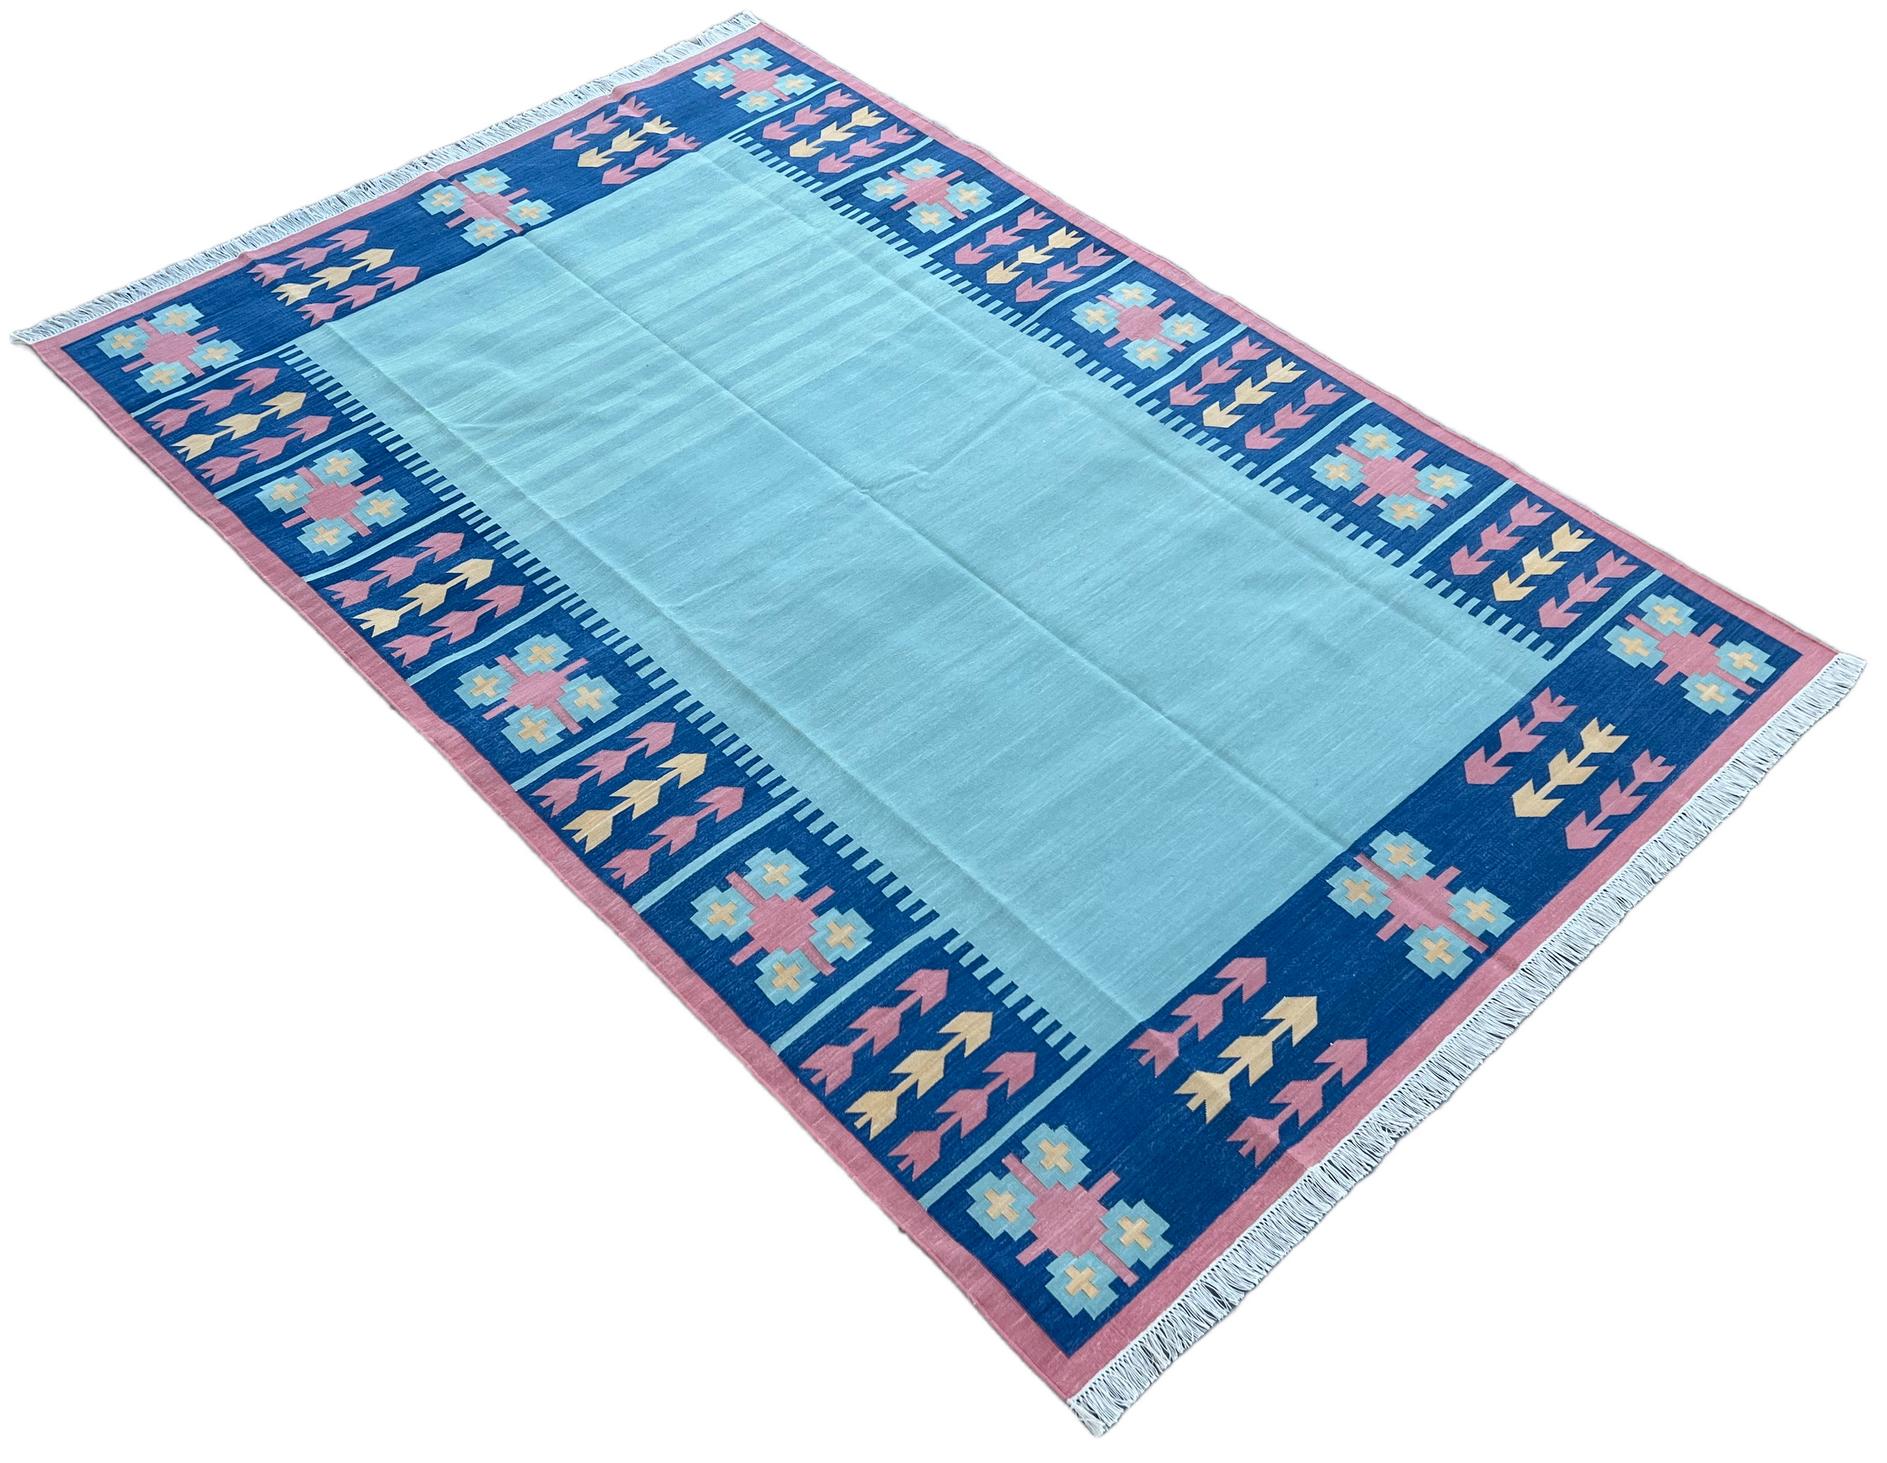 Baumwolle natürlich pflanzlich gefärbt blau und rosa Blatt gemustert indischen Teppich-6'x9'
Diese speziellen flachgewebten Dhurries werden aus 15-fachem Garn aus 100% Baumwolle handgewebt. Aufgrund der speziellen Fertigungstechniken, die zur